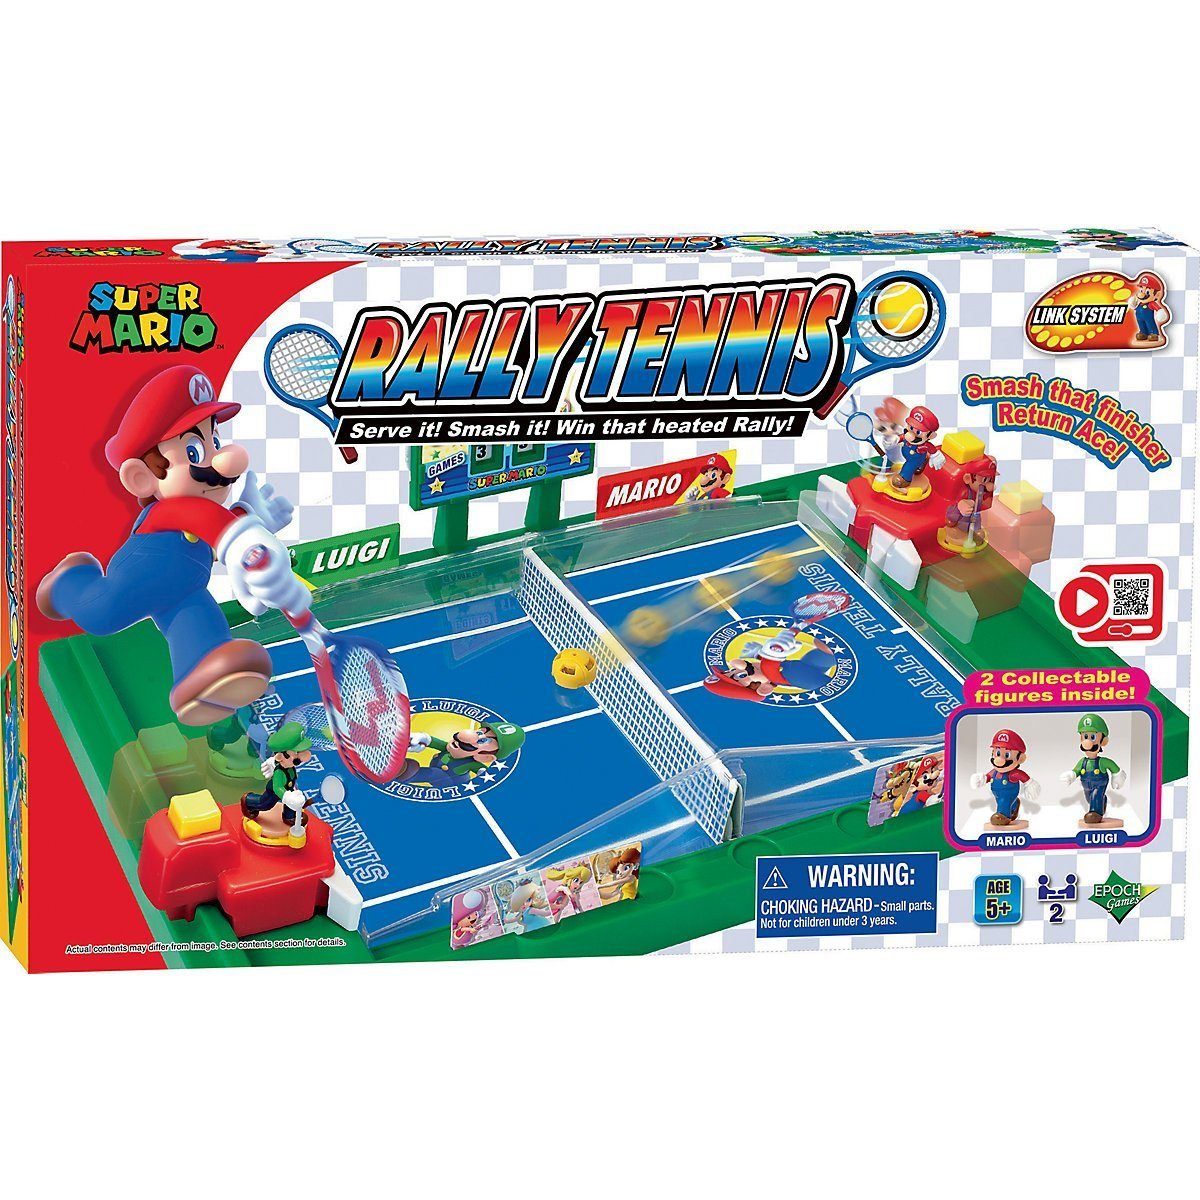 EPOCH Games Spiel, Kinderspiel Super Mario "Rally Tennis" ab 5 Jahren 2 Ігриr Action-Tennis